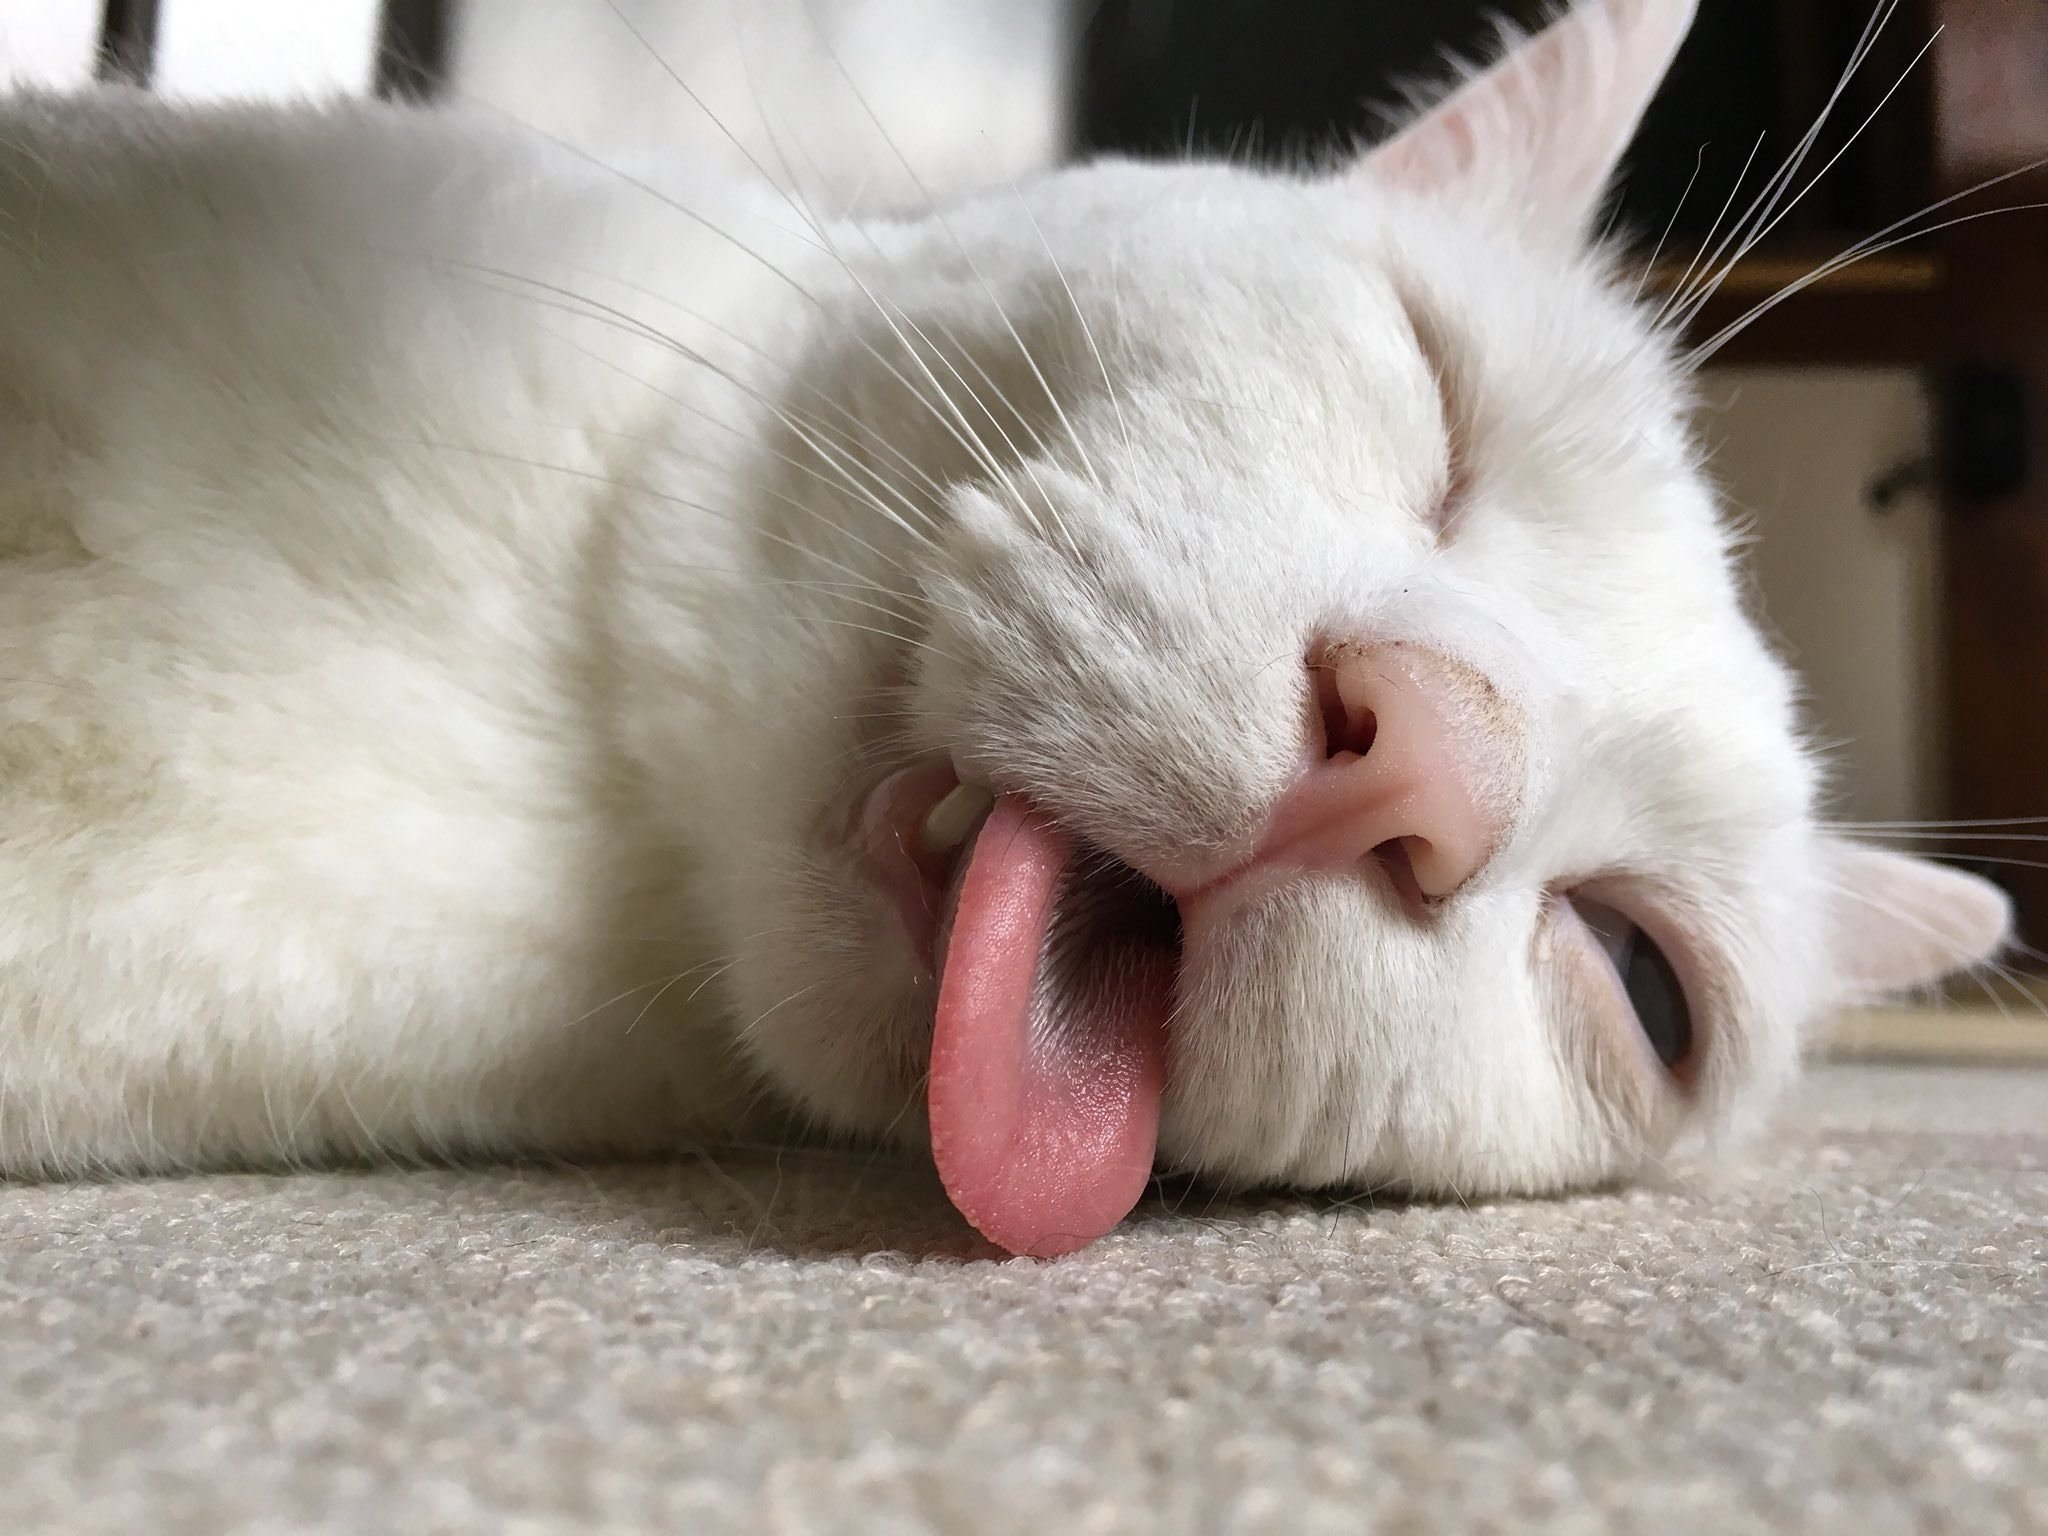 Спать с высунутым языком. Кошка с высунутым языком. Спящий кот. Белая кошка с высунутым языком. Спящий кот с высунутым языком.